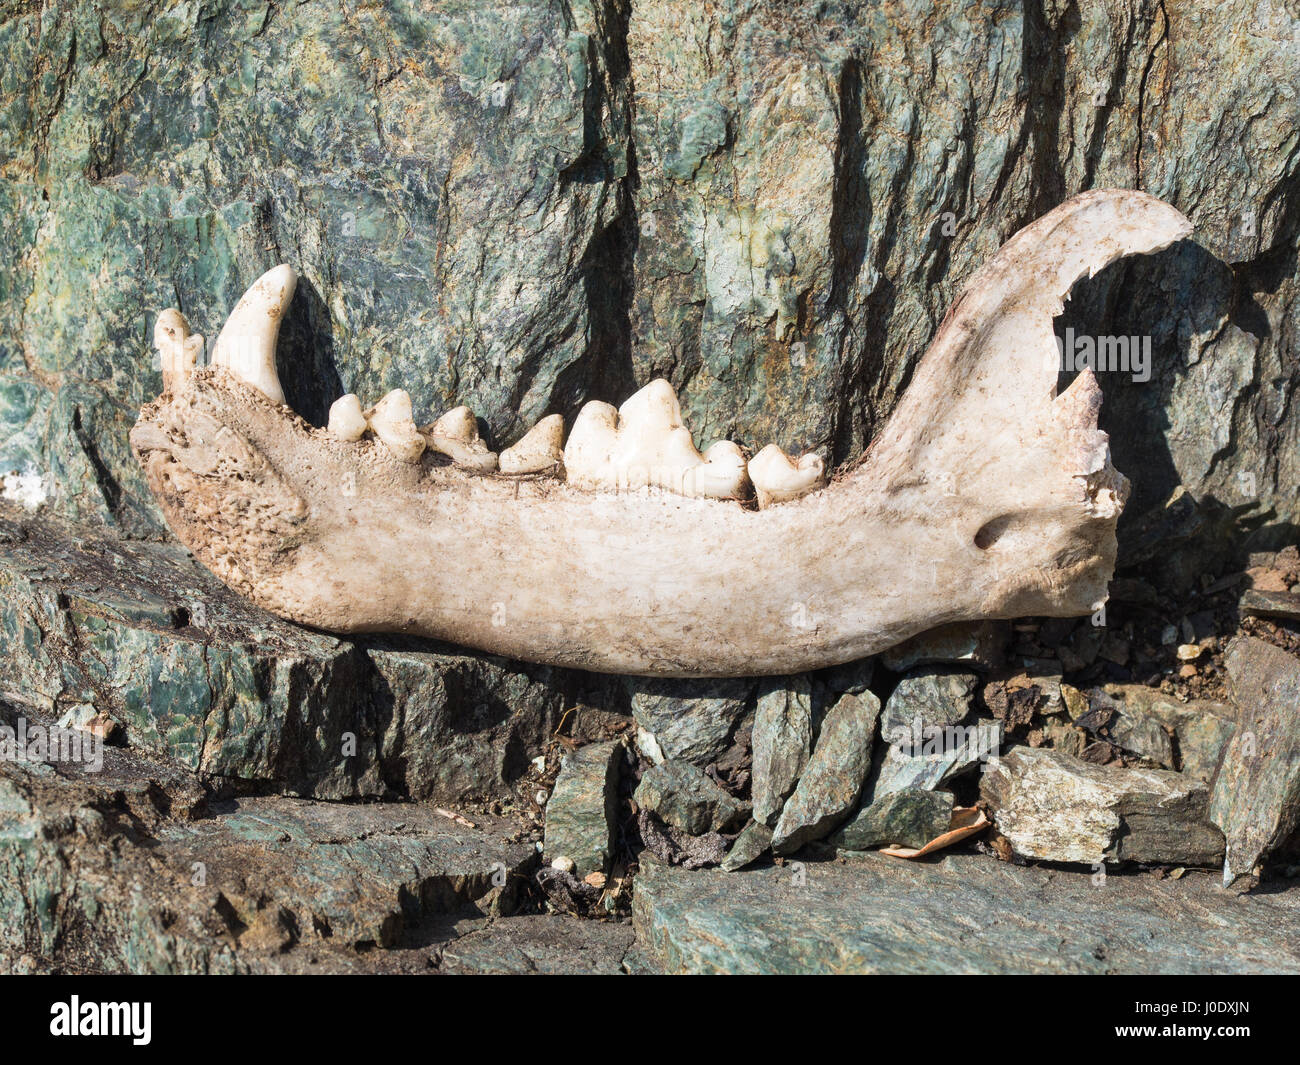 L'os de la mâchoire inférieure du chien avec des dents canines, incisives, prémolaires et molaires sur les roches Banque D'Images